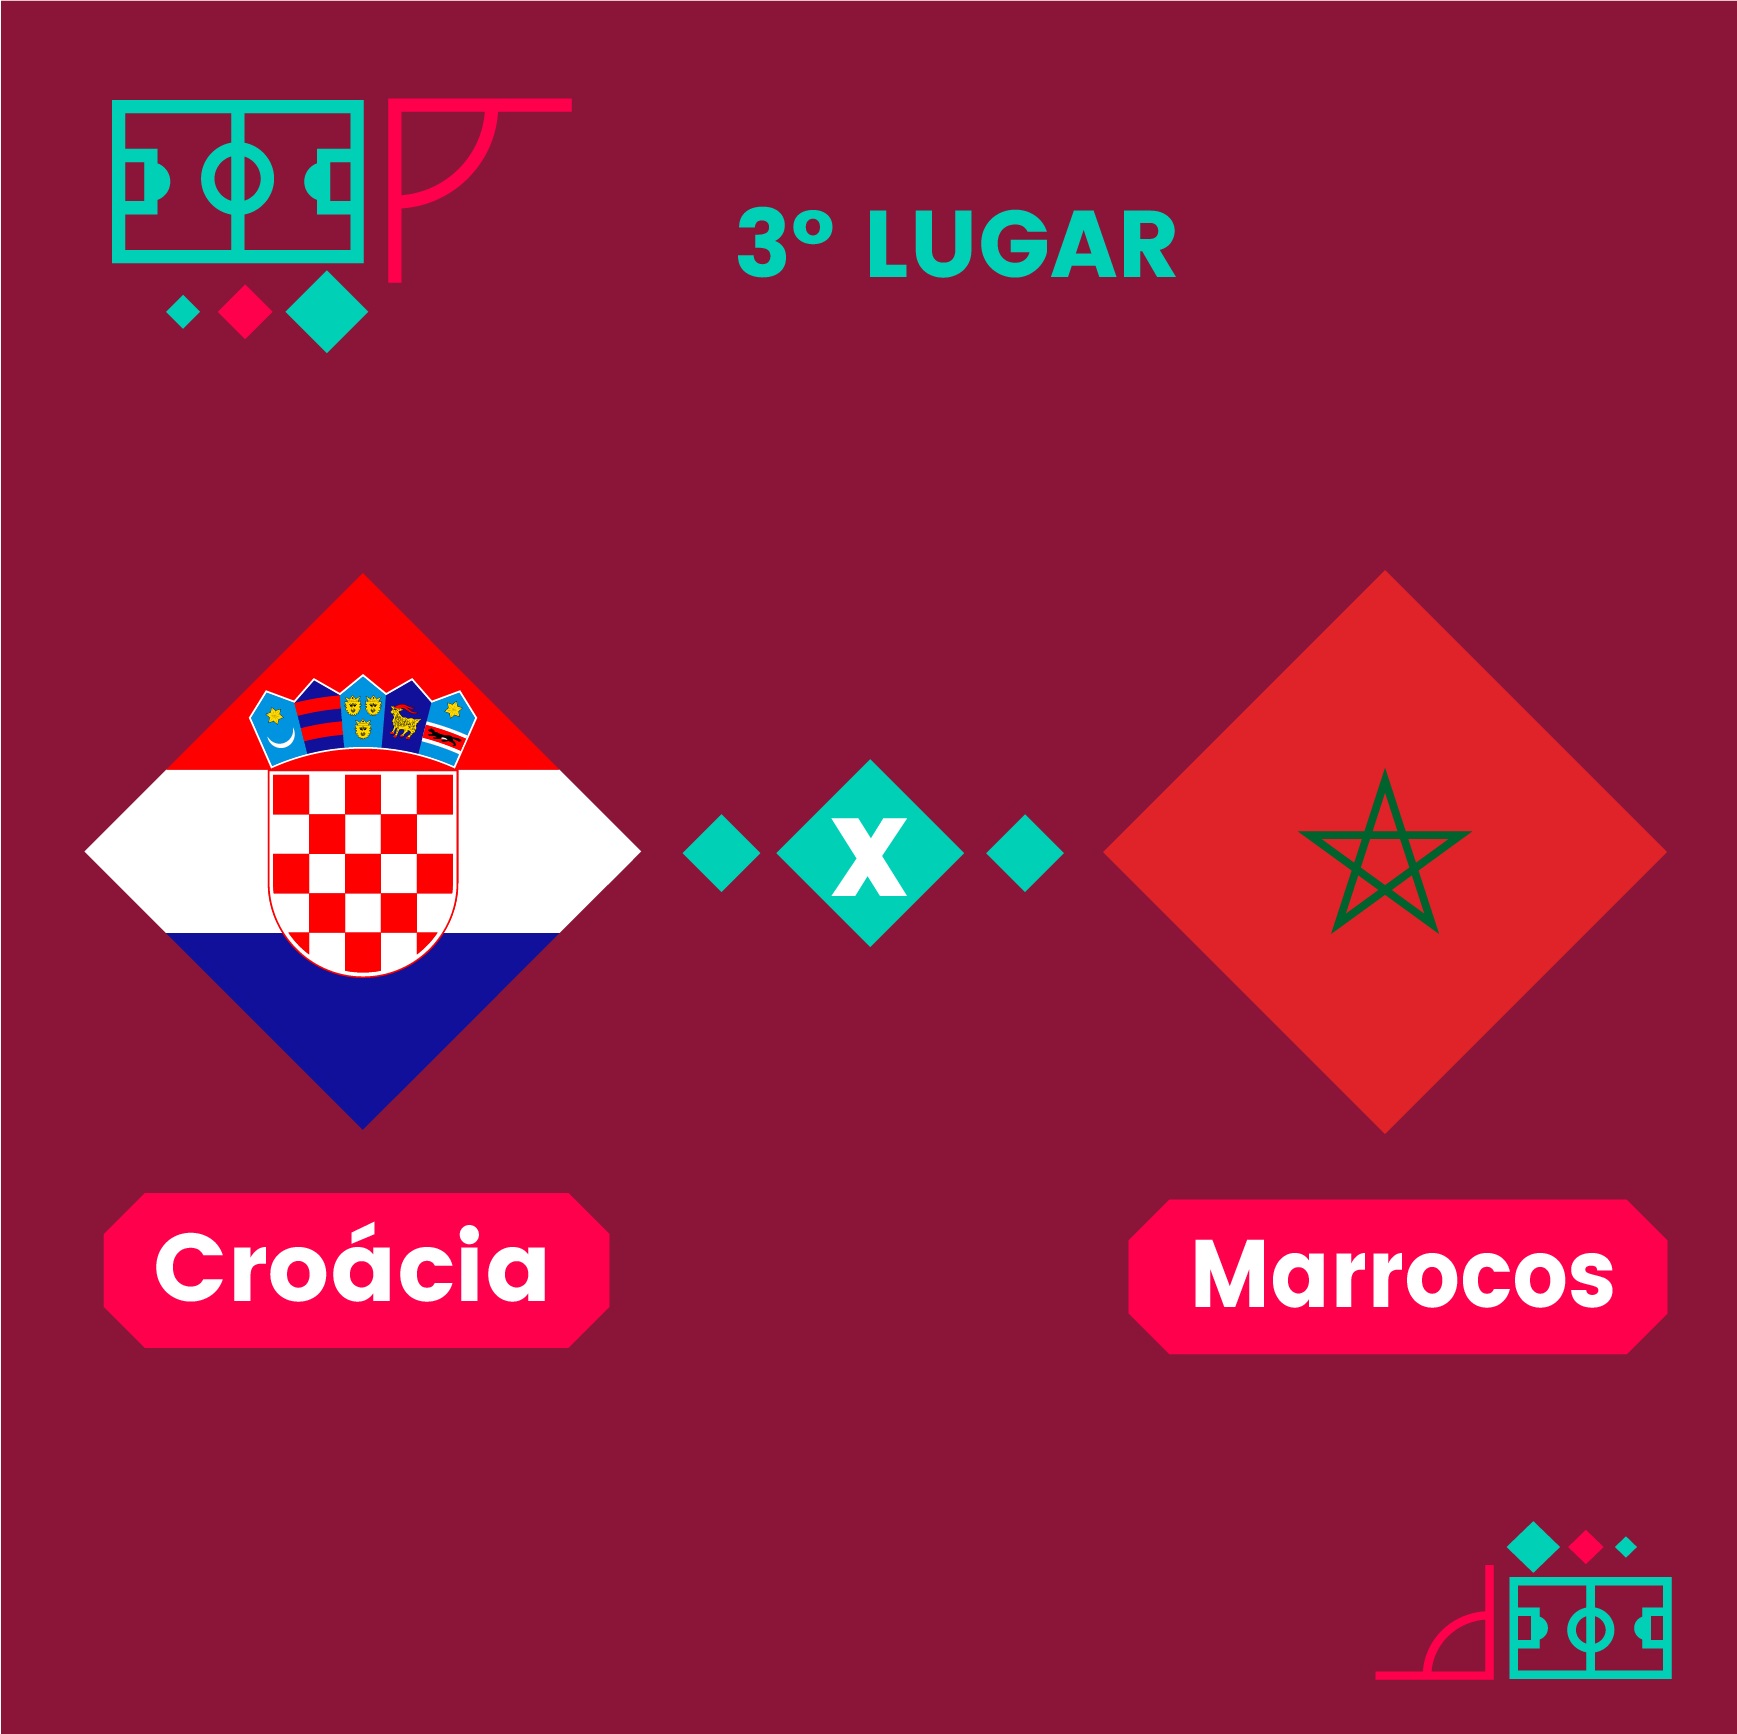 Croácia livra Brasil de um vexame: confira os memes da vitória da Argentina  na Copa